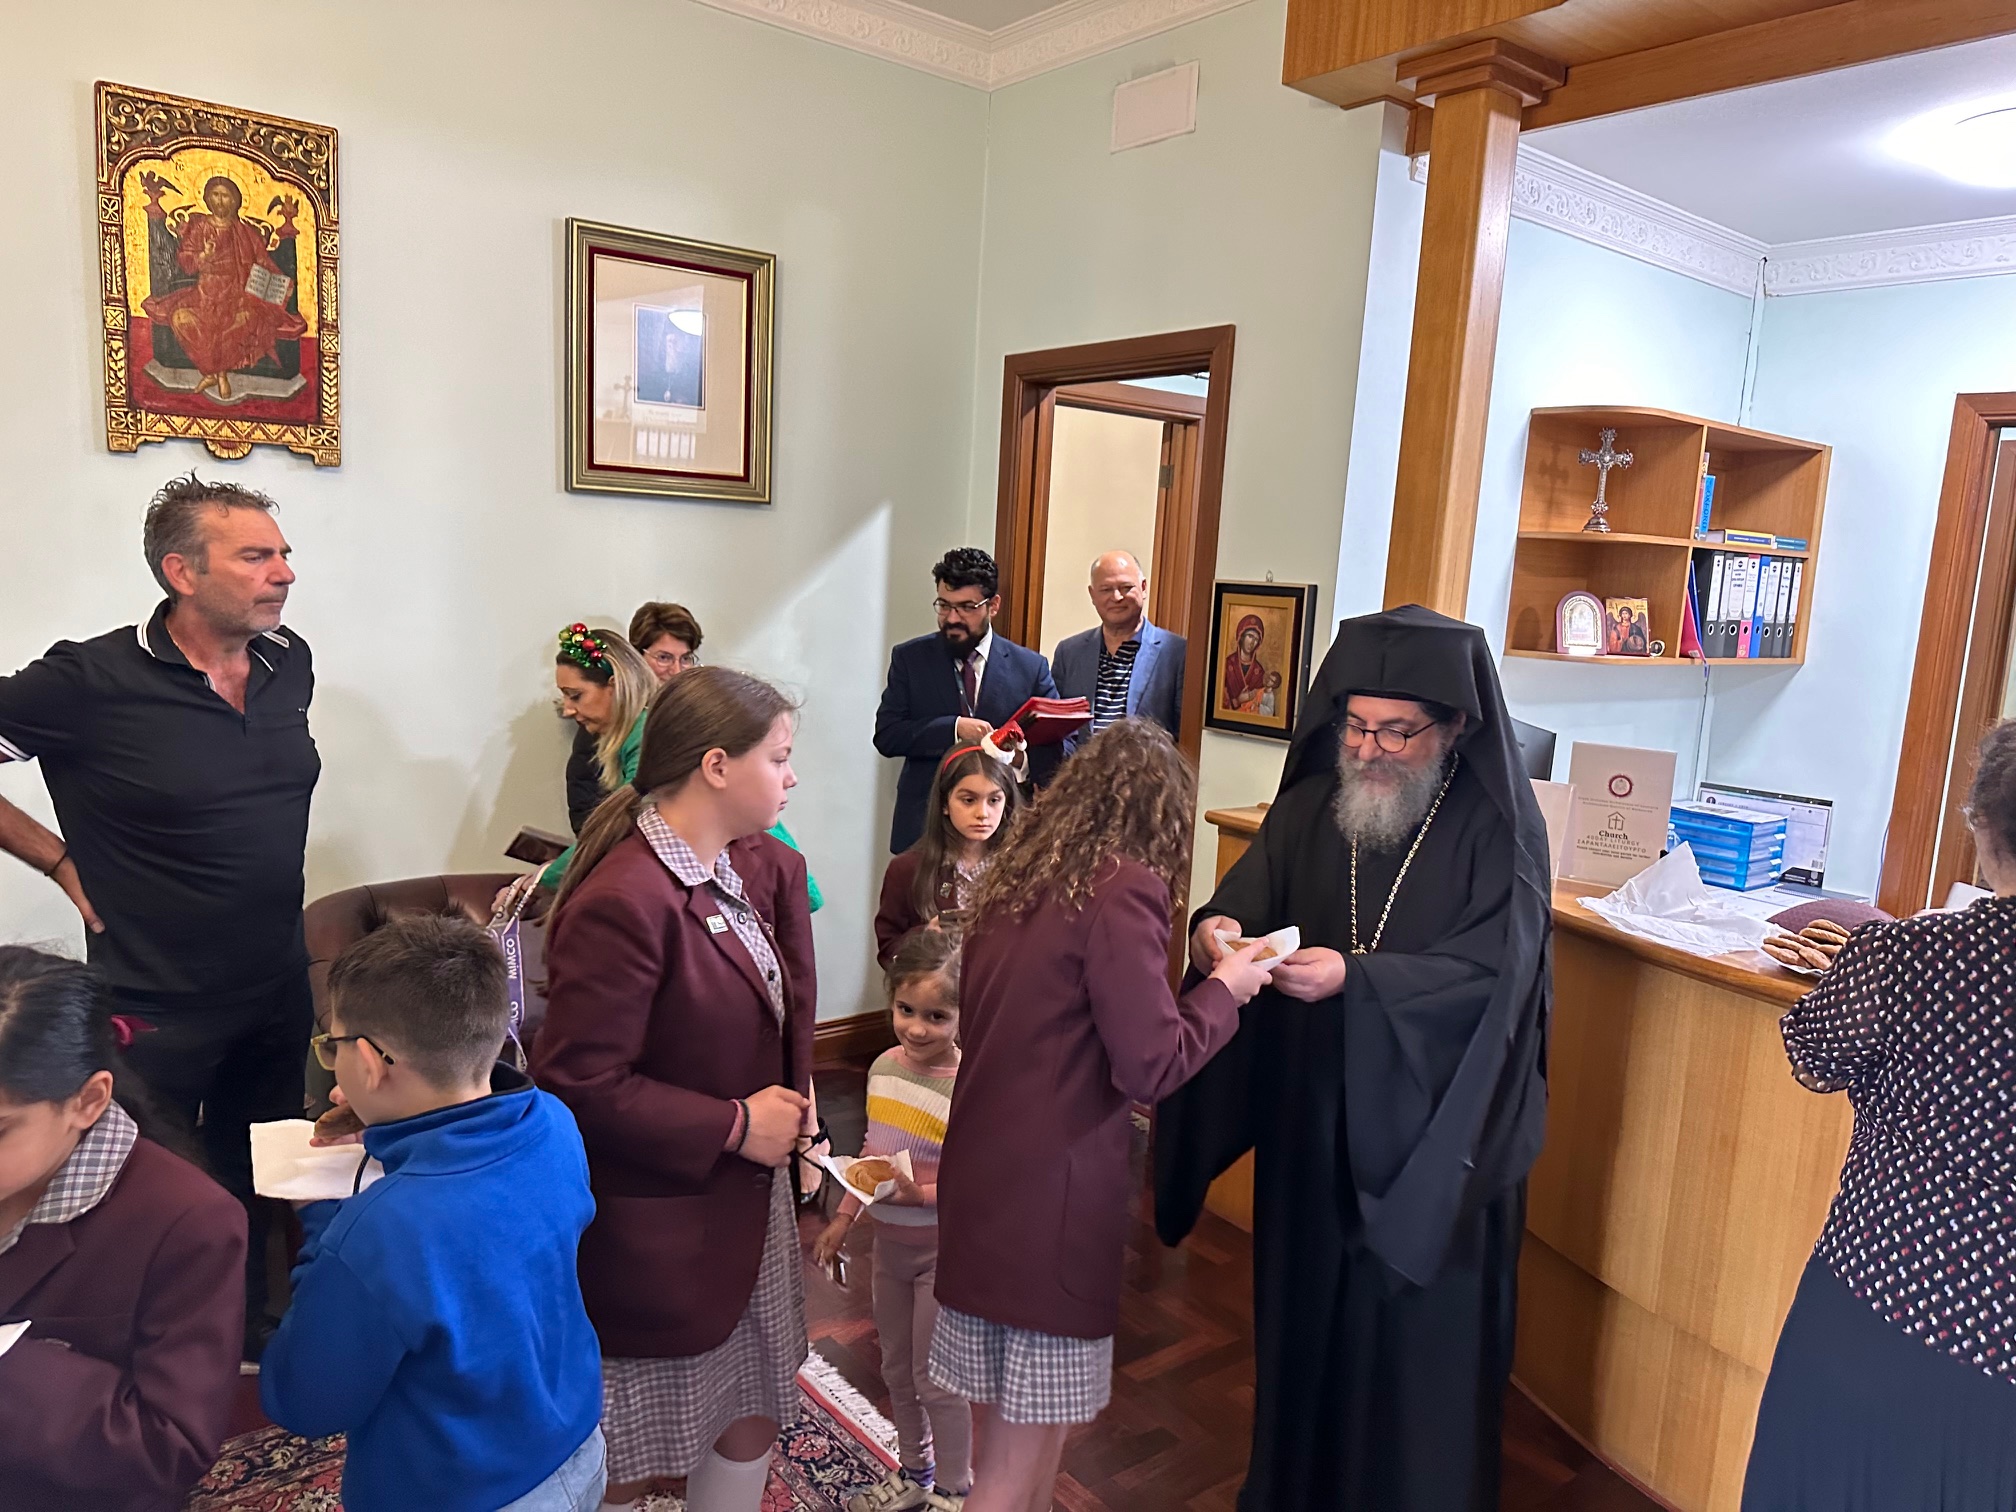 Μαθητές και μαθήτριες του Oakleigh Grammar έψαλαν παραδοσιακά κάλαντα της Χίου στον Επίσκοπο Σωζοπόλεως